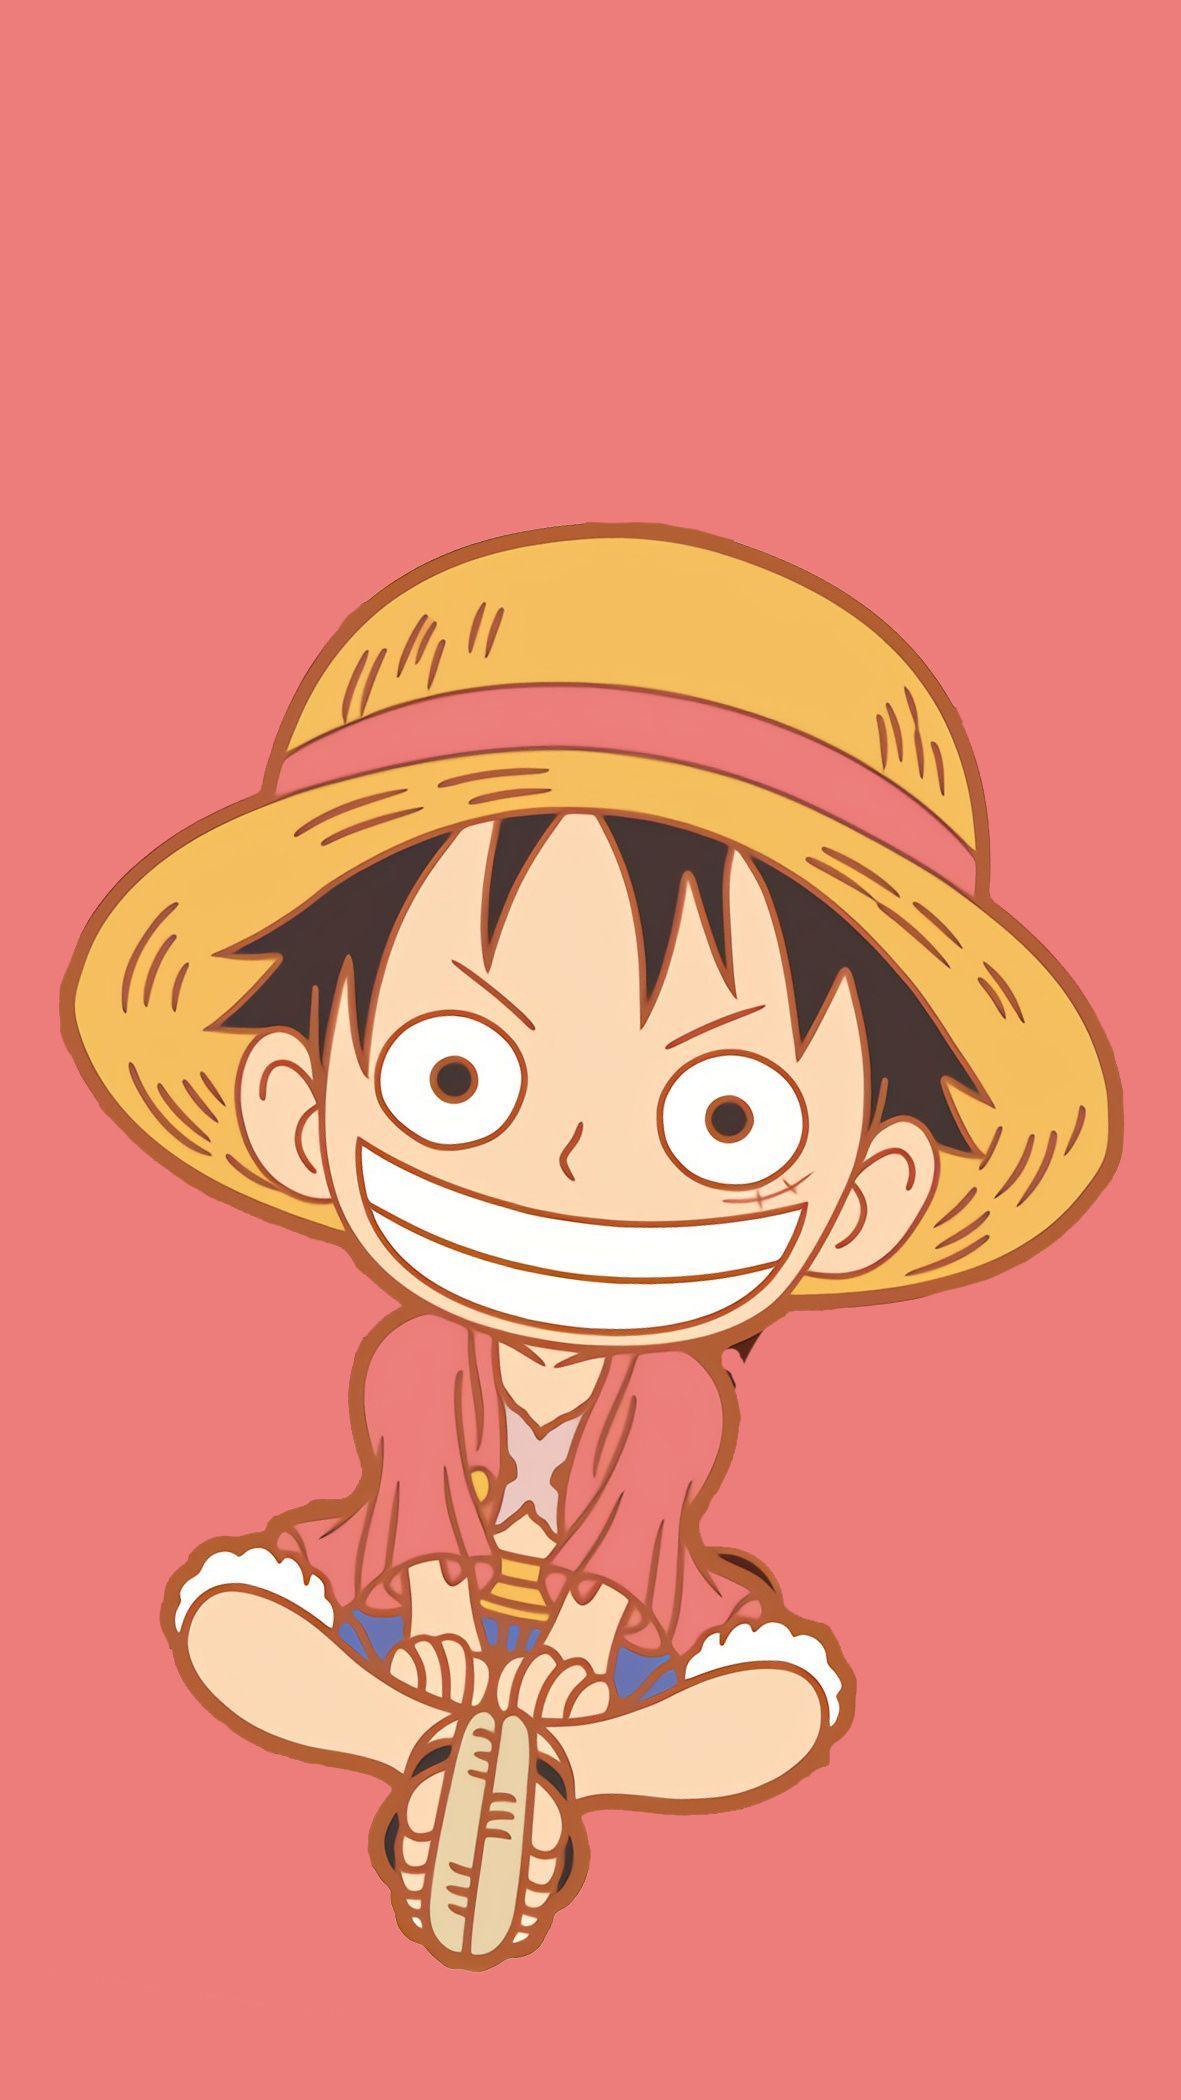 Hình ảnh Luffy mũ rơm là điều mà fan hâm mộ One Piece không thể bỏ qua. Với đôi mắt săn chắc, khuôn mặt gương cười và chiếc mũ rơm là biểu tượng của Luffy, bức ảnh này chắc chắn sẽ làm bạn mê mẩn.